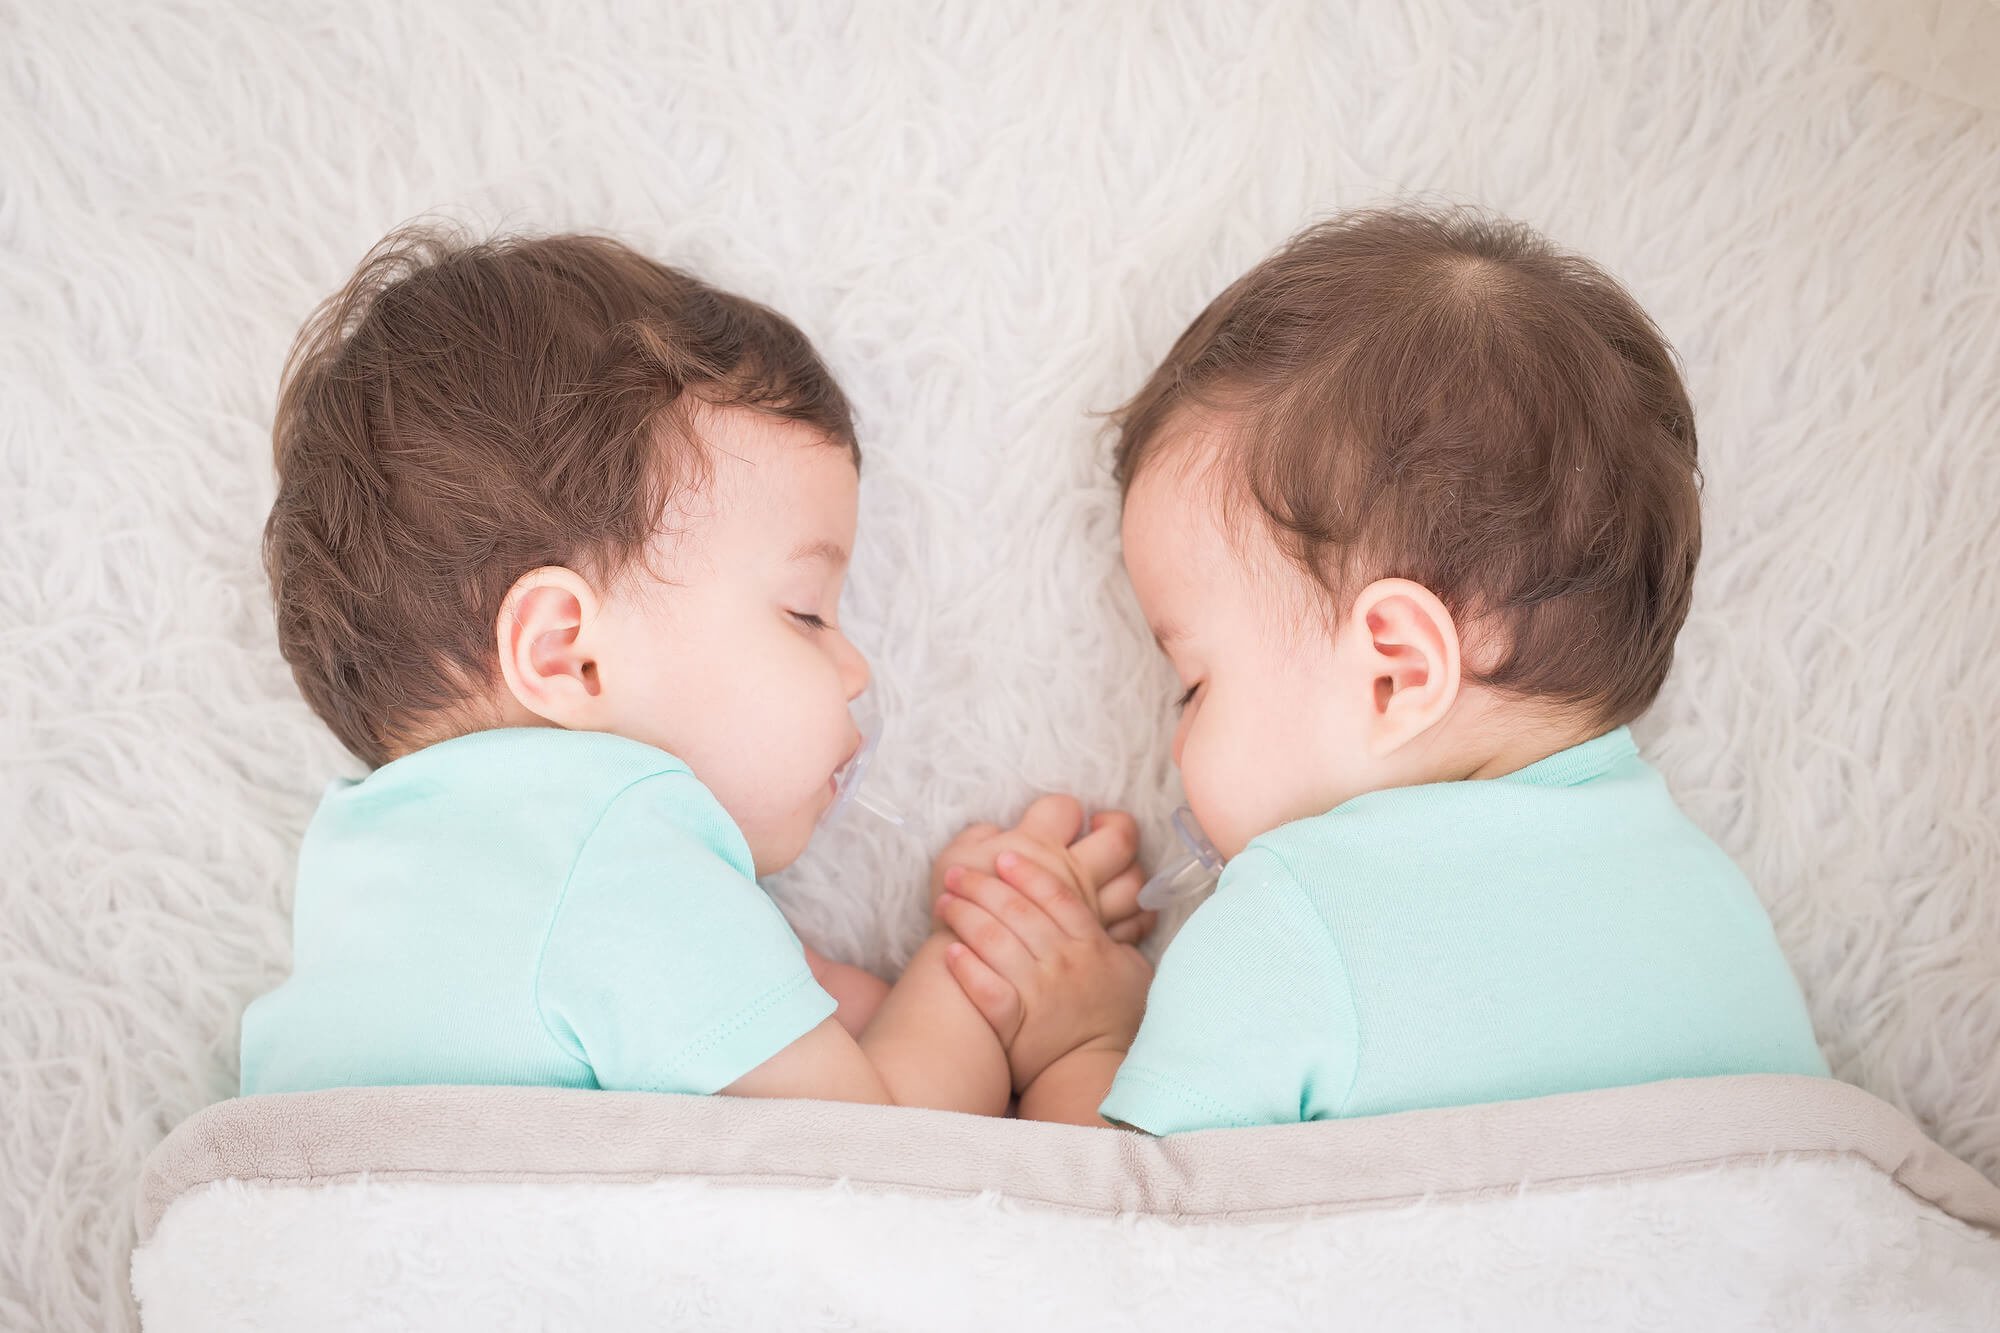 スピリチュアルにおける双子の存在とは？妊娠が持つスピリチュアルな意味も解説！